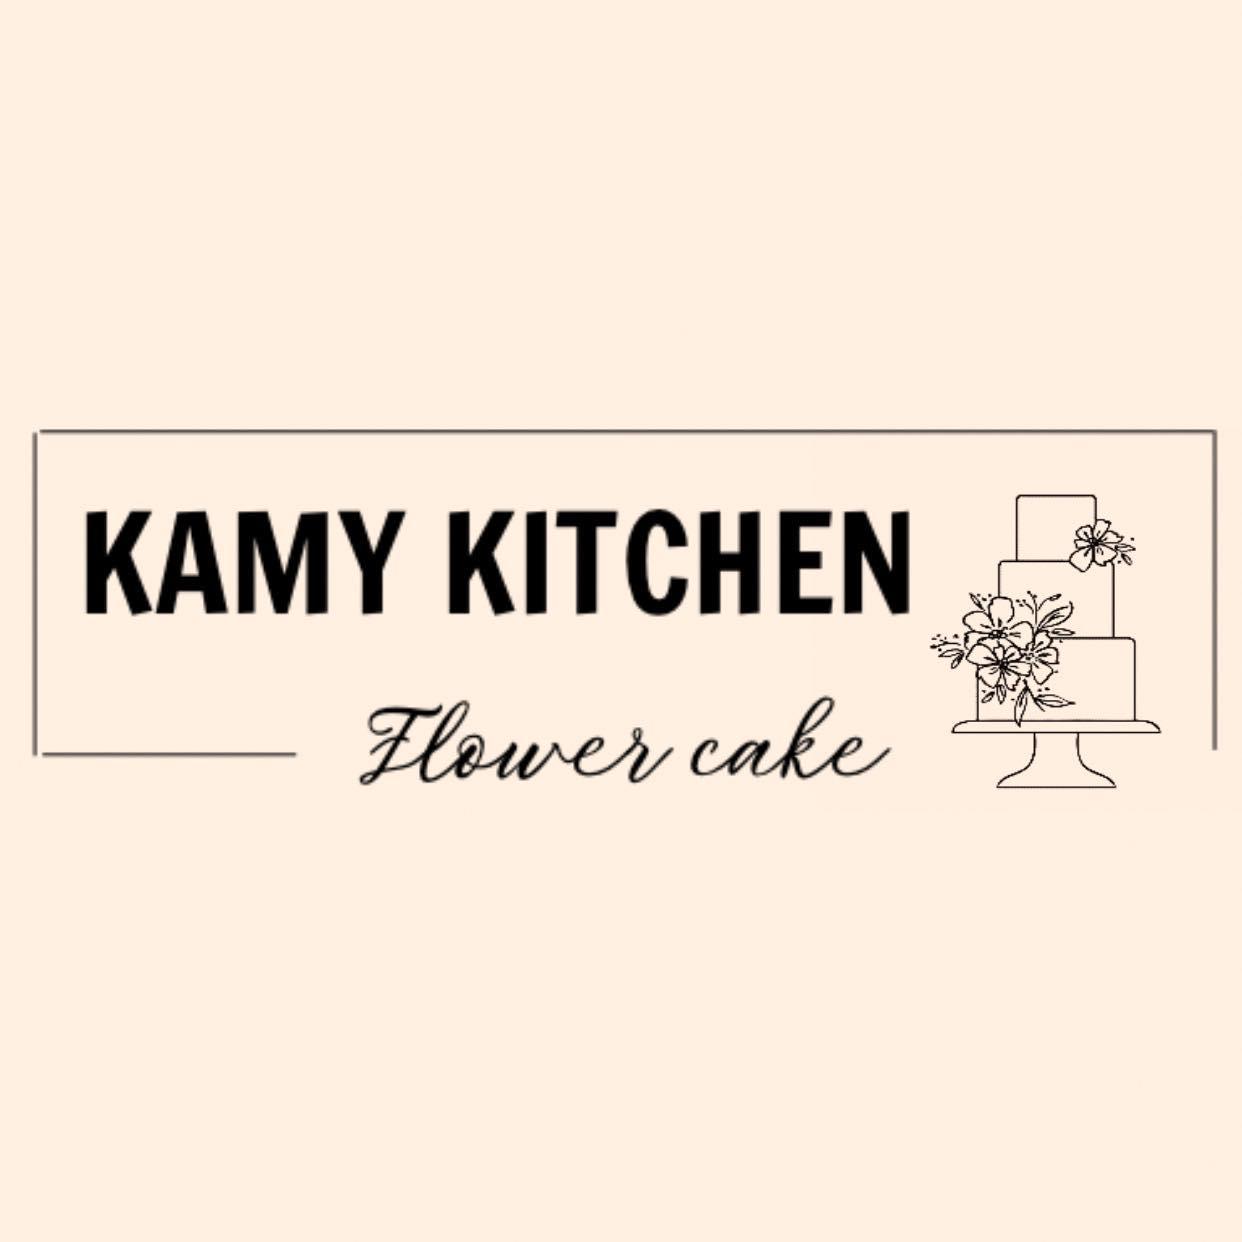 Tiệm Bánh Kamy Kitchen